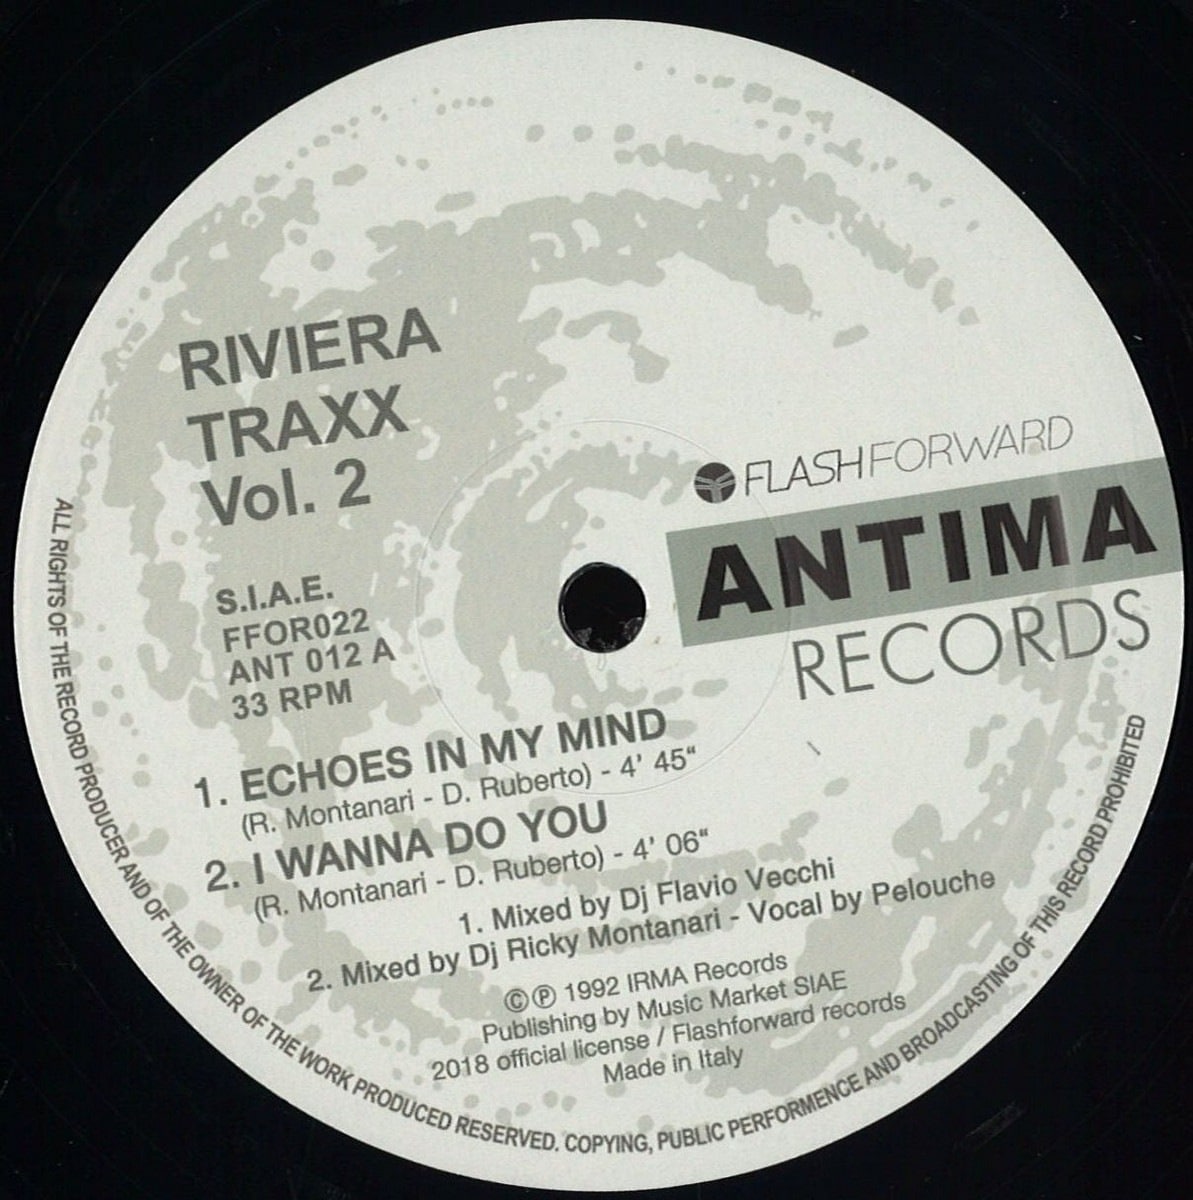 Riviera Traxx - Vol 2 - FFOR022 - FLASH FORWARD